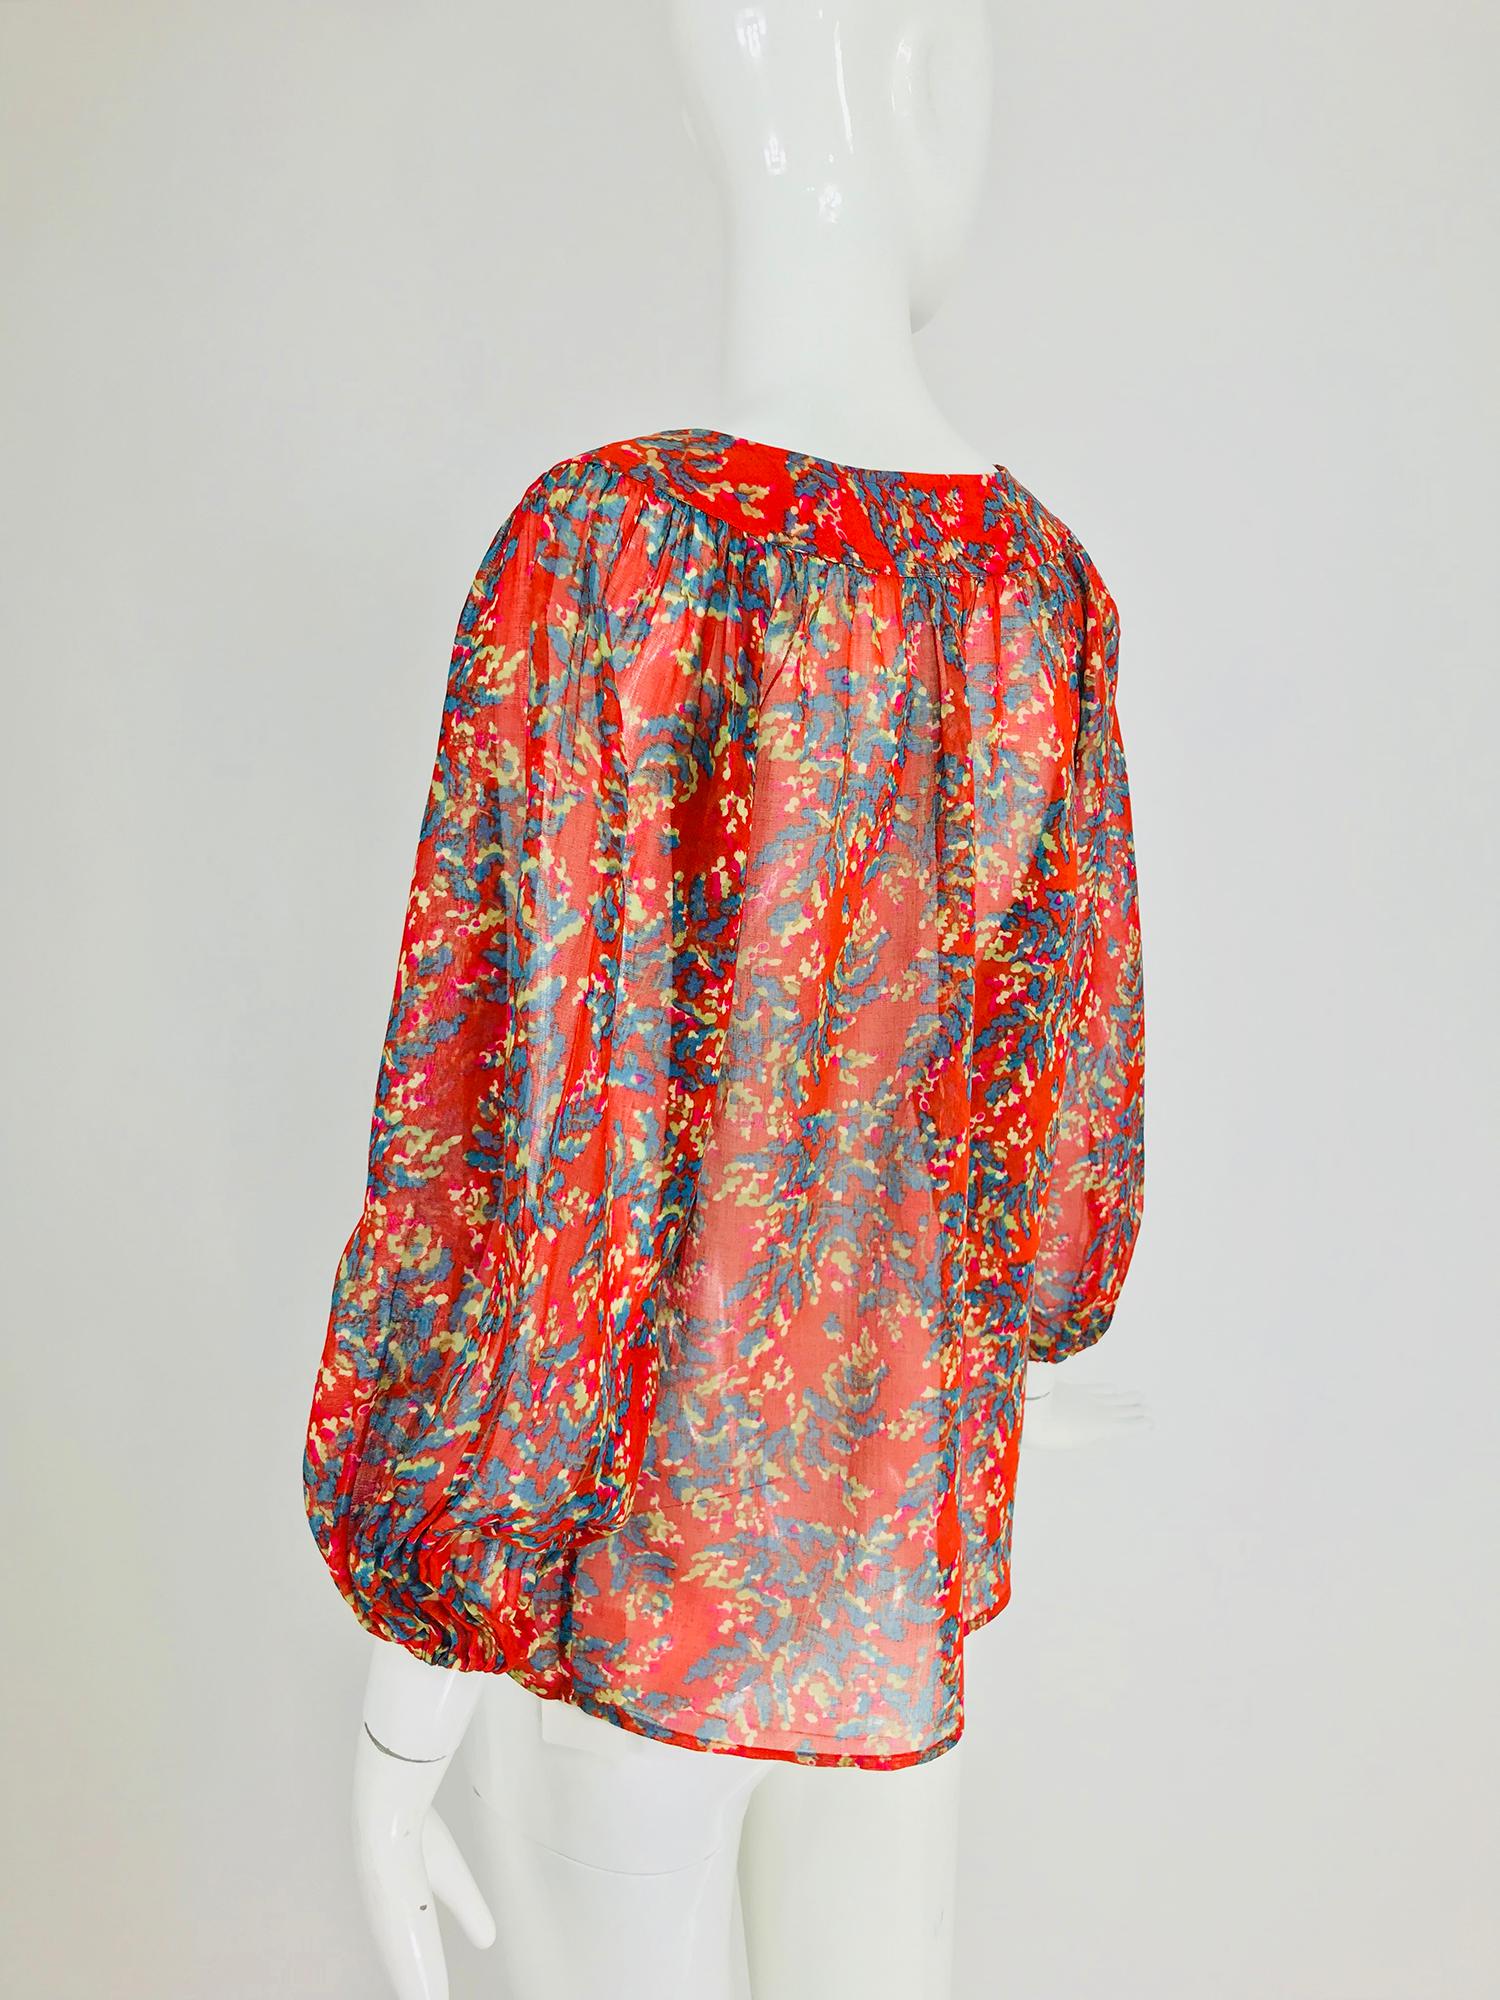 Yves Saint Laurent sheer floral cotton peasant blouse 1970s 1